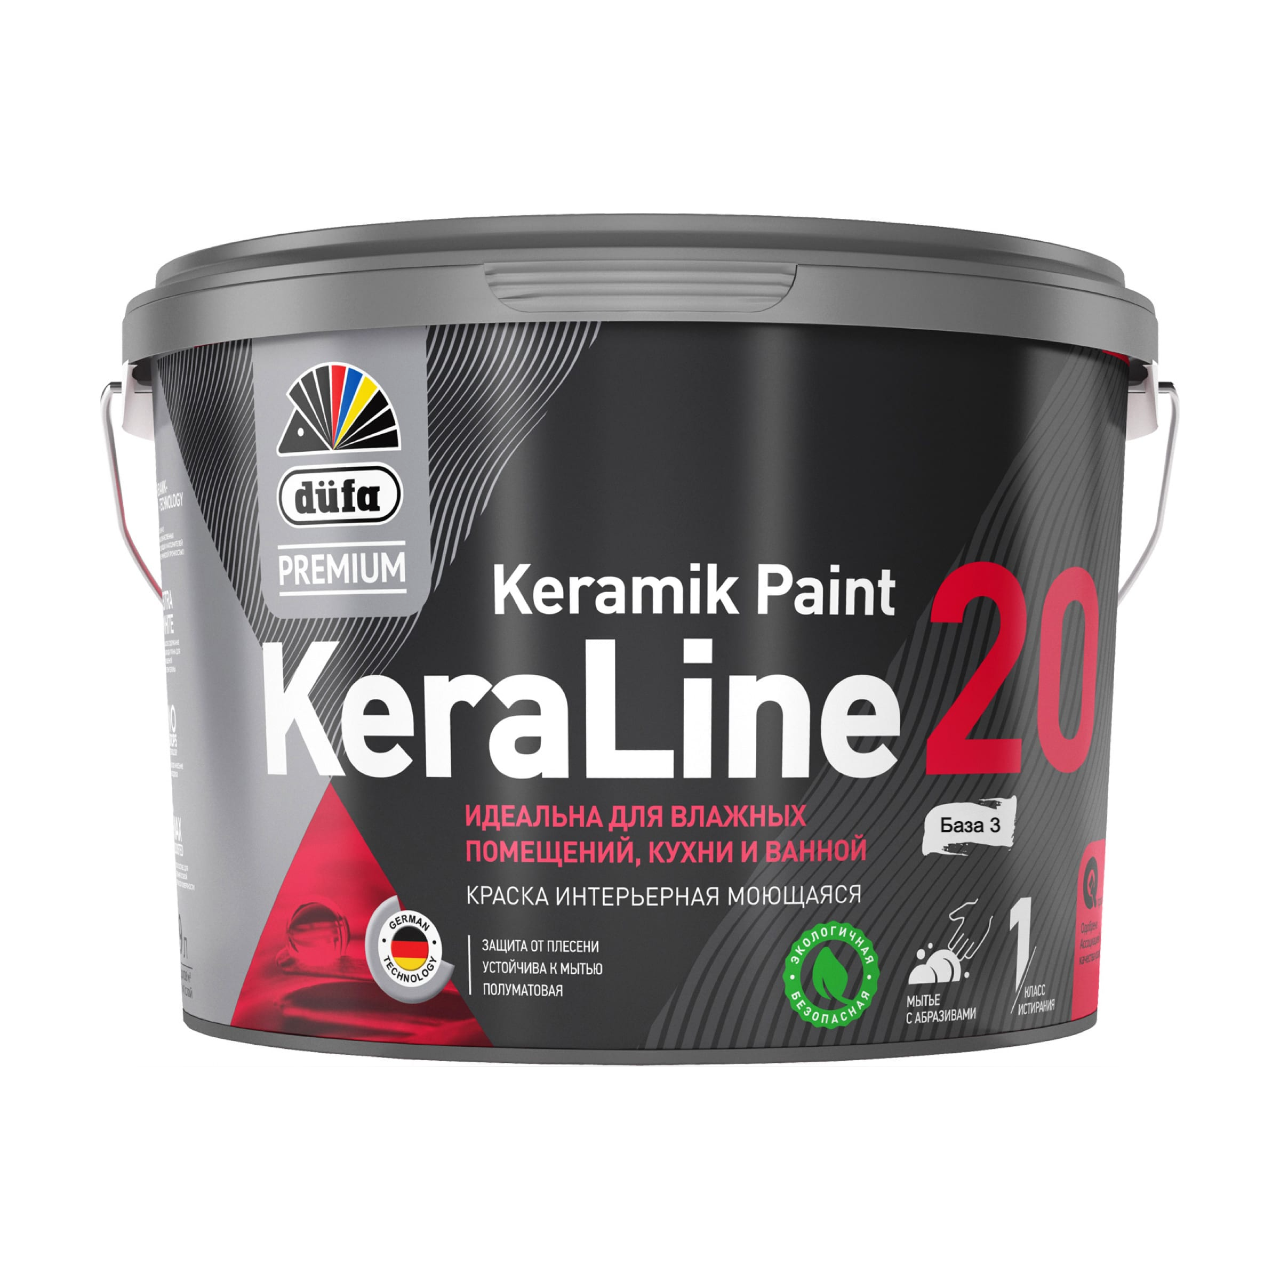 90190637 Краска для влажных помещений Premium KeraLine Keramik Paint 20 полуматовая прозрачная база 3 9 л STLM-0126784 DUFA